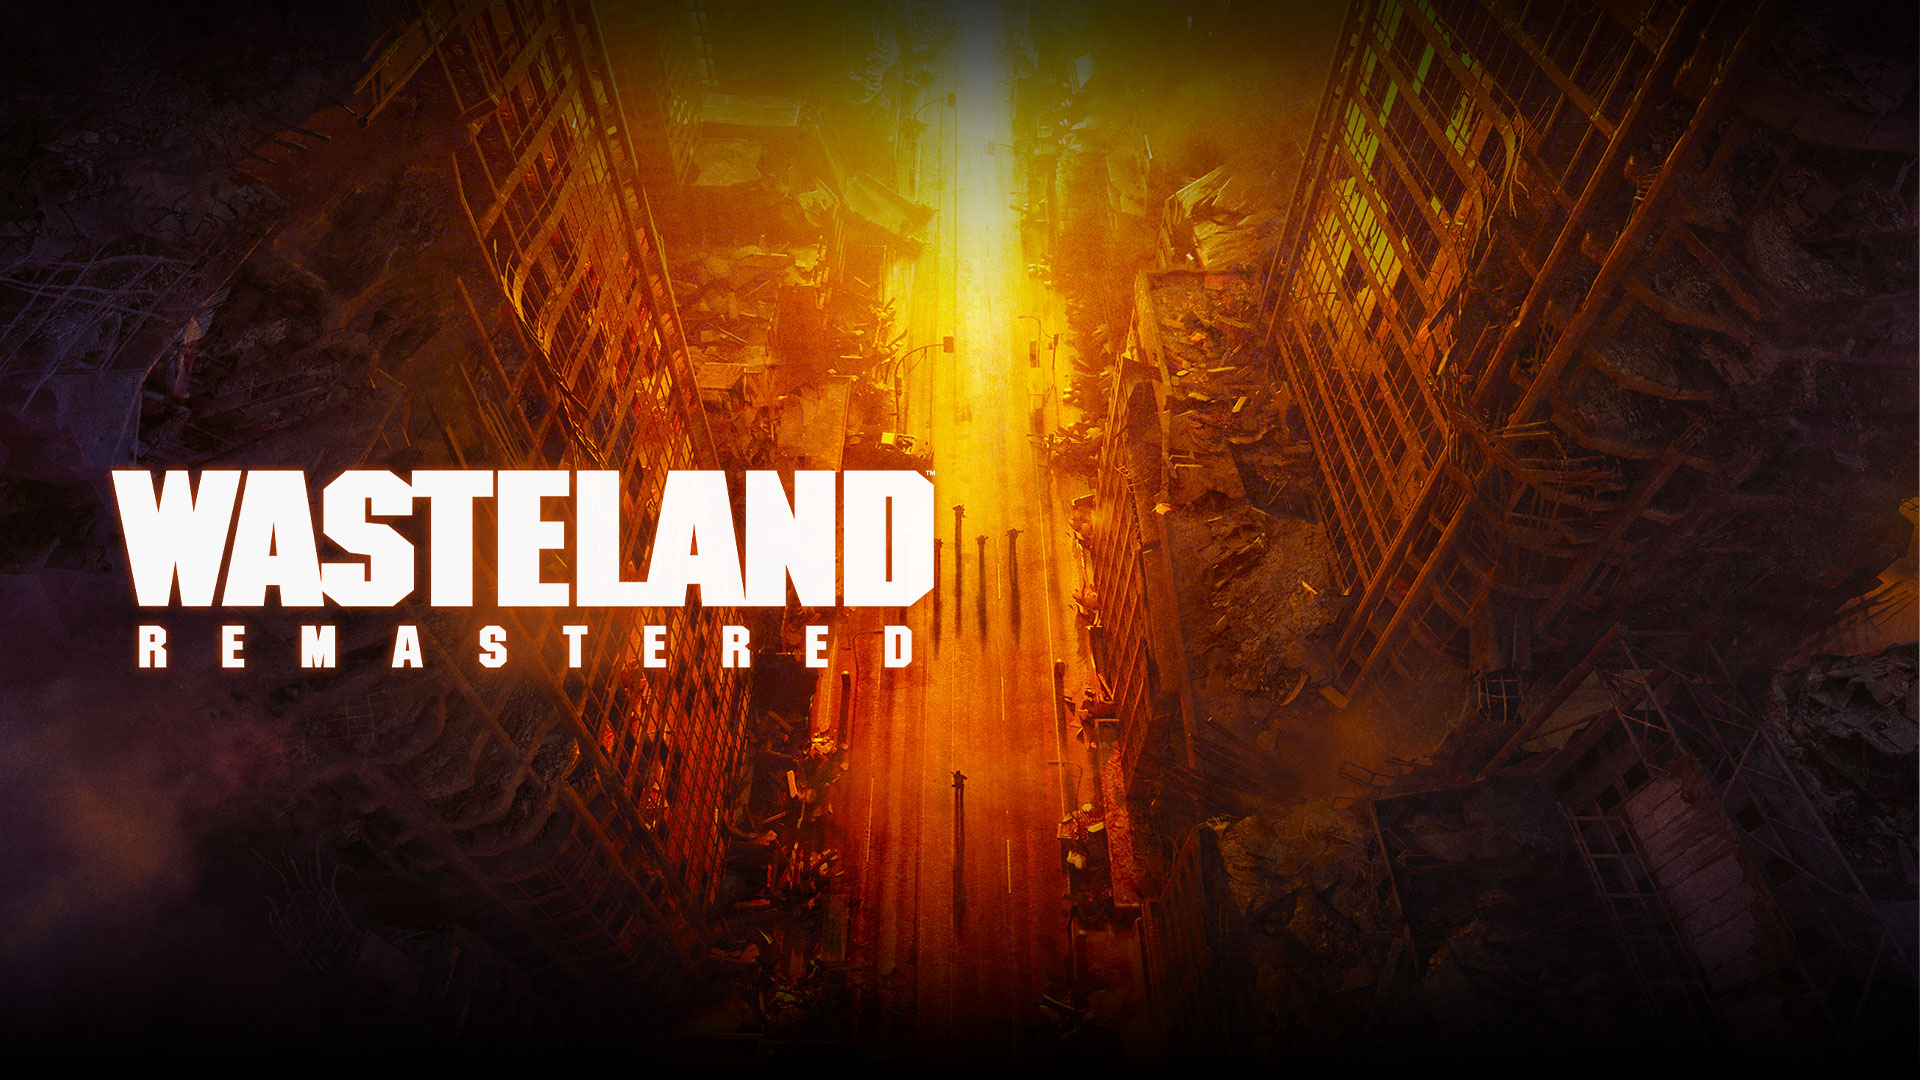 Wasteland Remastered, vue plongeante sur des bâtiments en ruine et des gens dans la rue, dans une gamme de tons jaunes, orange et rouges